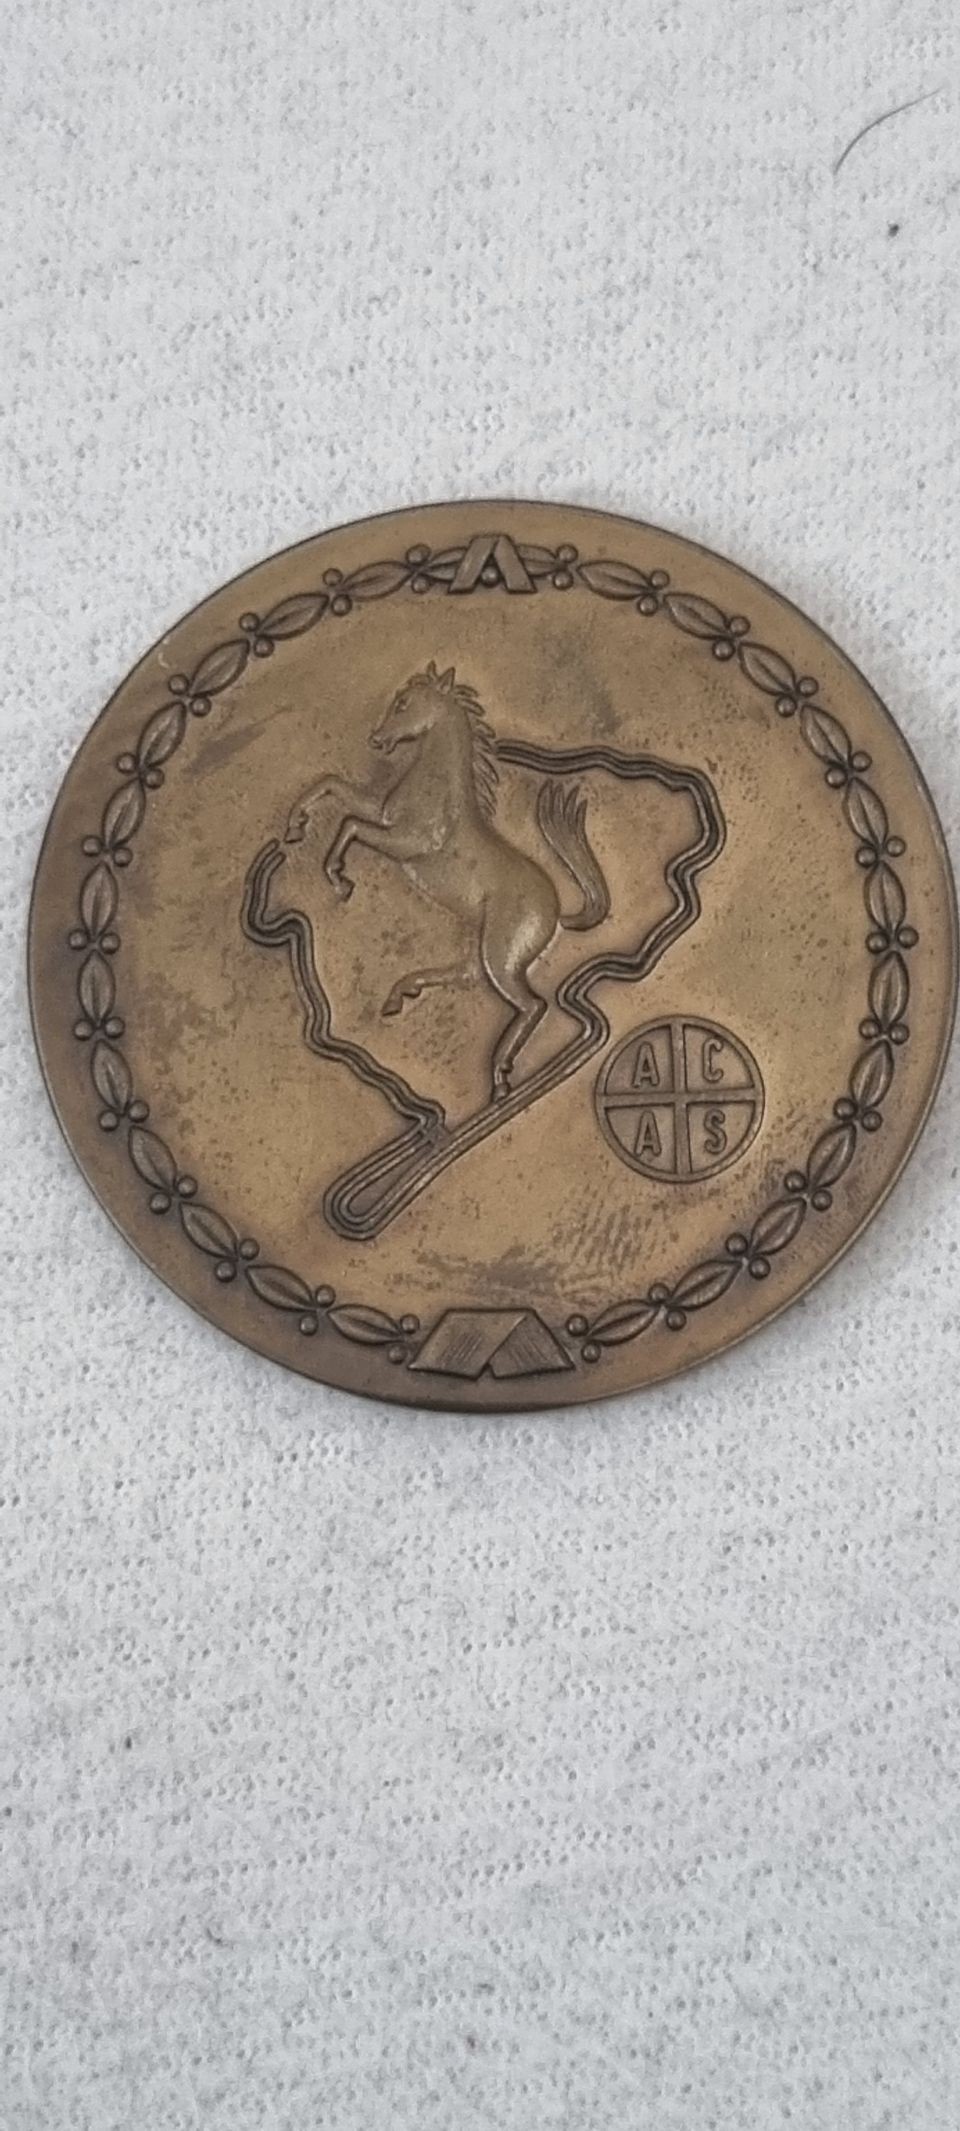 Vanha saksalainen mitali vuodelta 1964